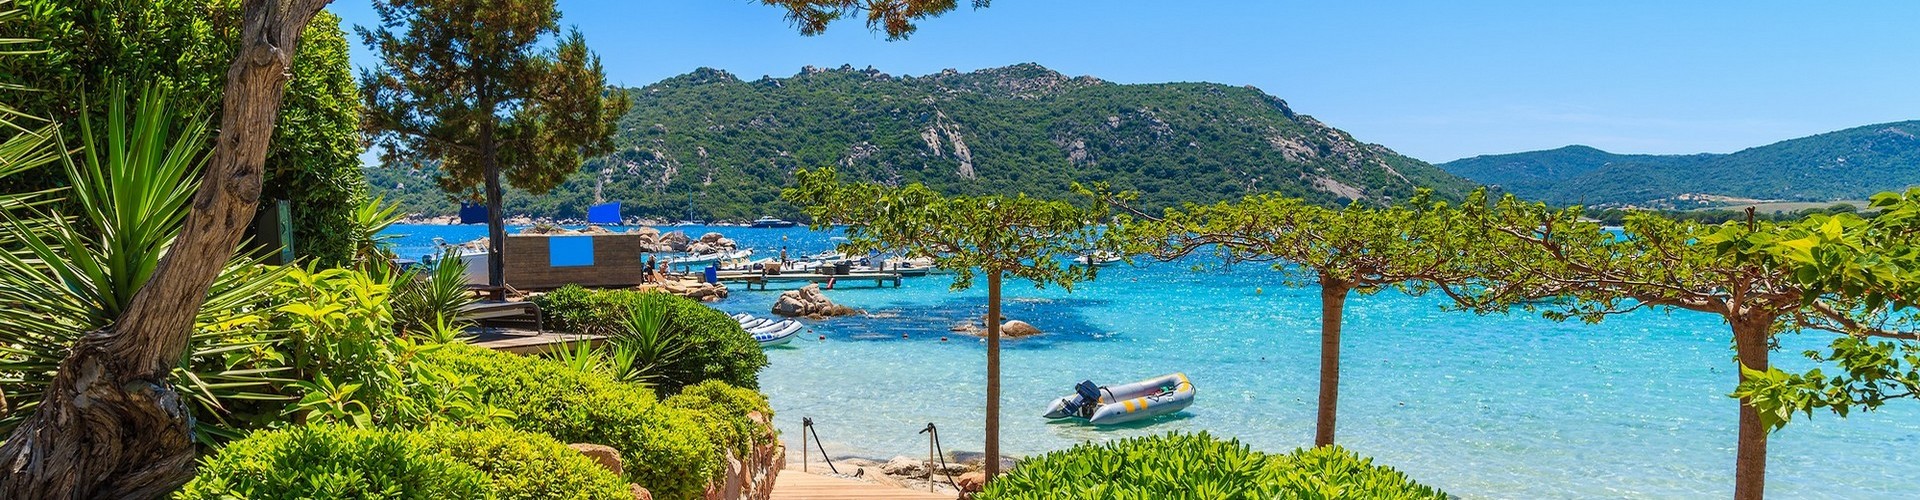 10 incontournables à découvrir en Corse